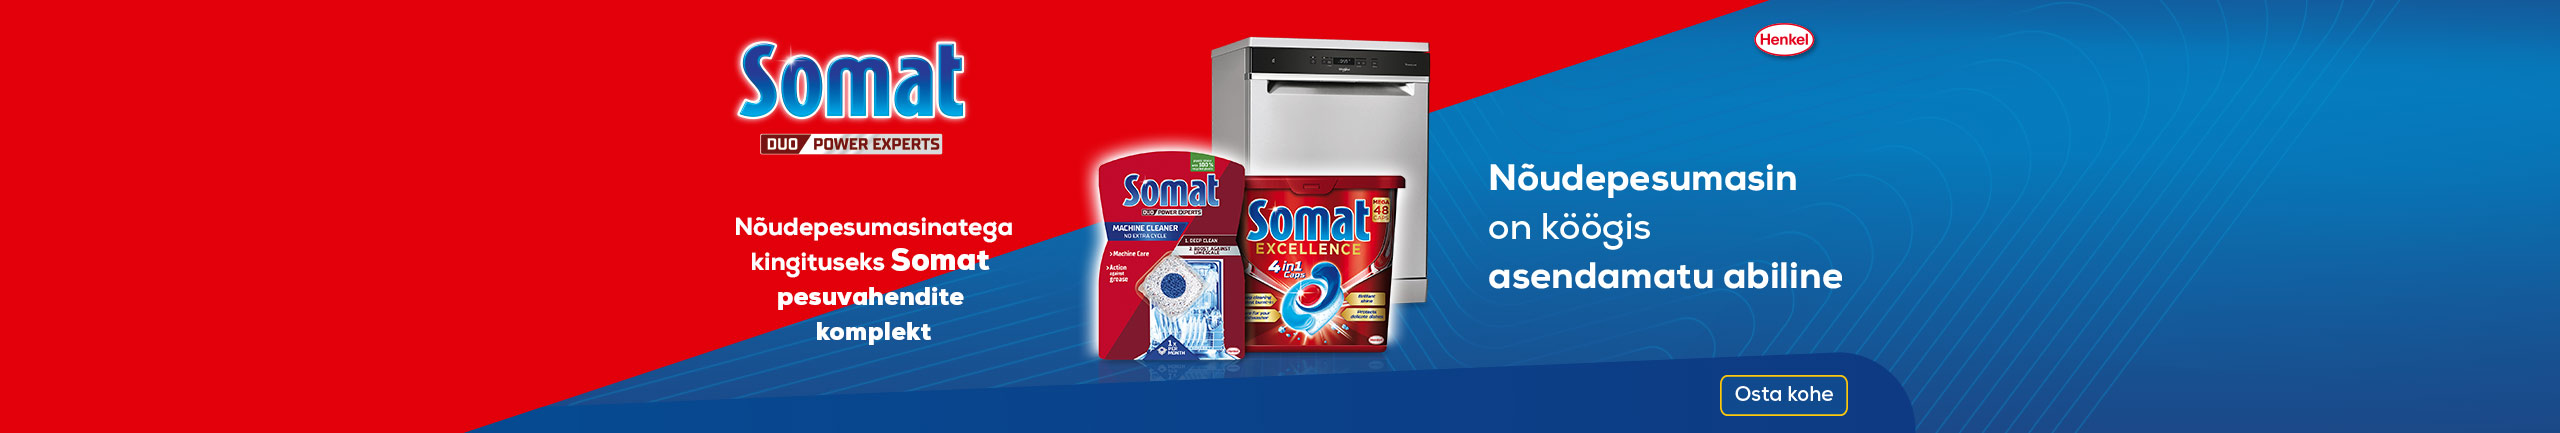 Nõudepesumasinatega kingituseks Somat pesuvahendite komplekt!